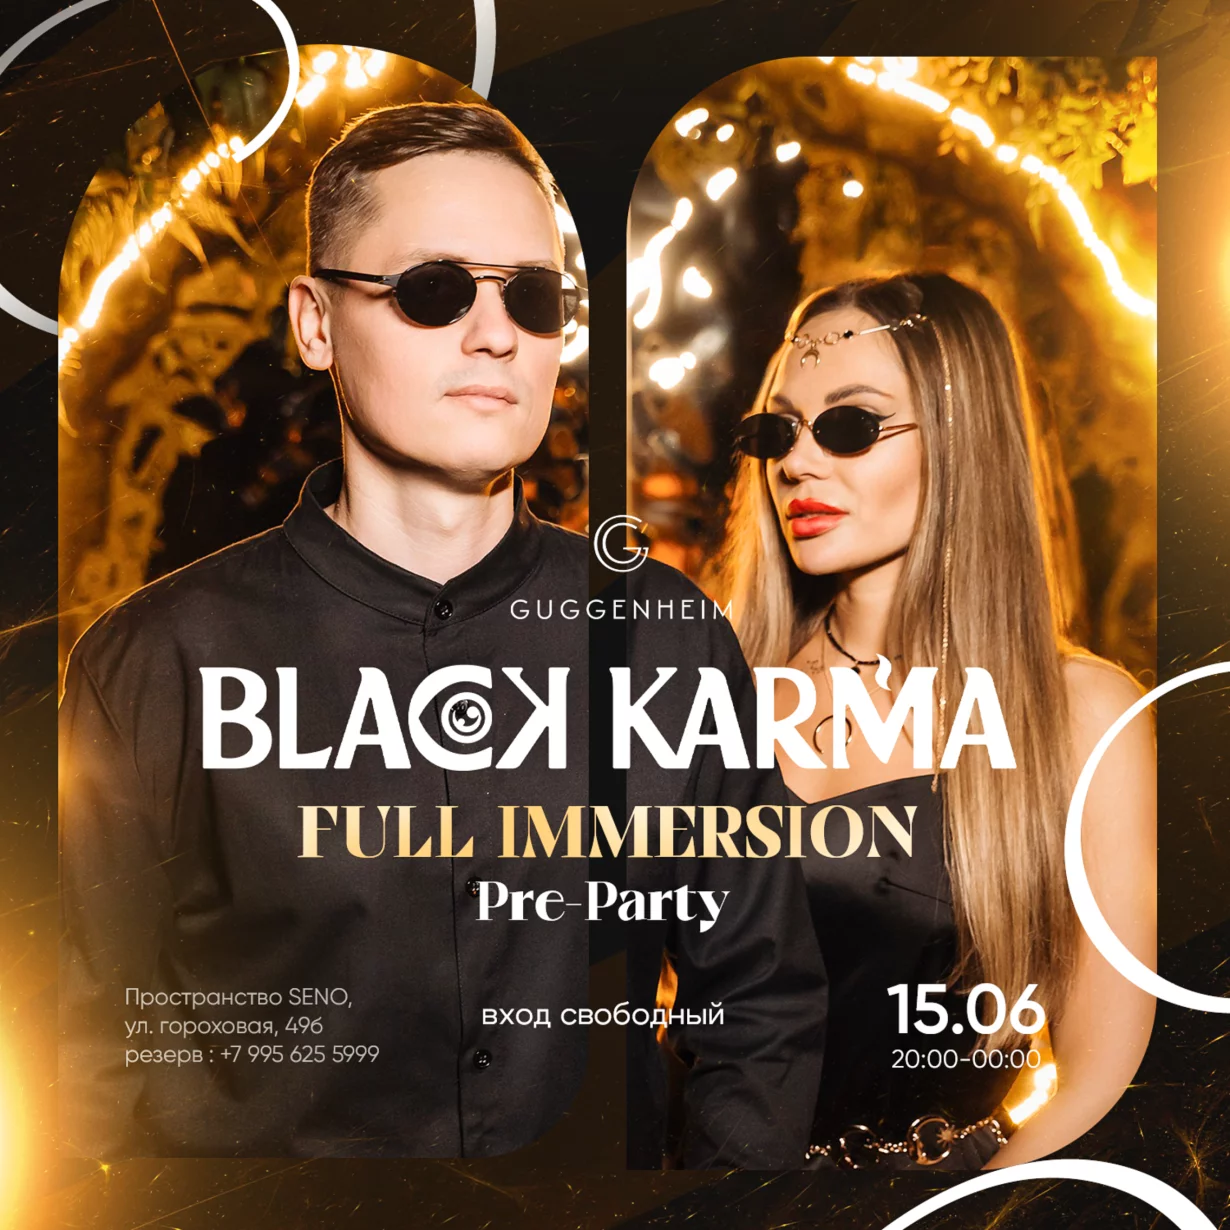 Black Karma (20:00-00:00)